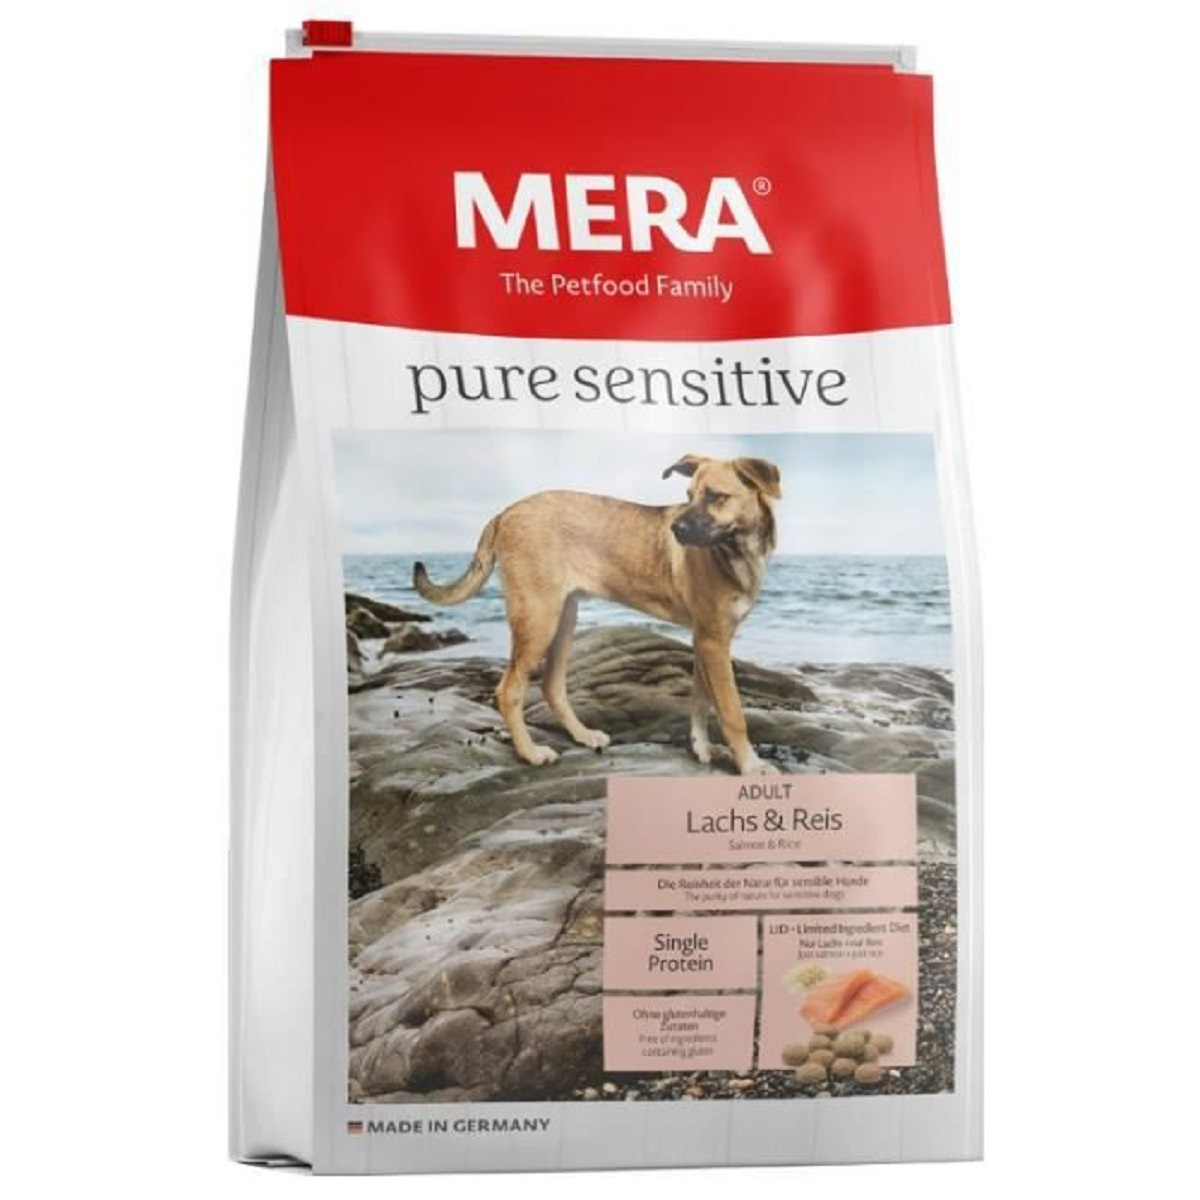 MERA Pure Sensitive al salmone e riso per cane adulto di taglia media e grande